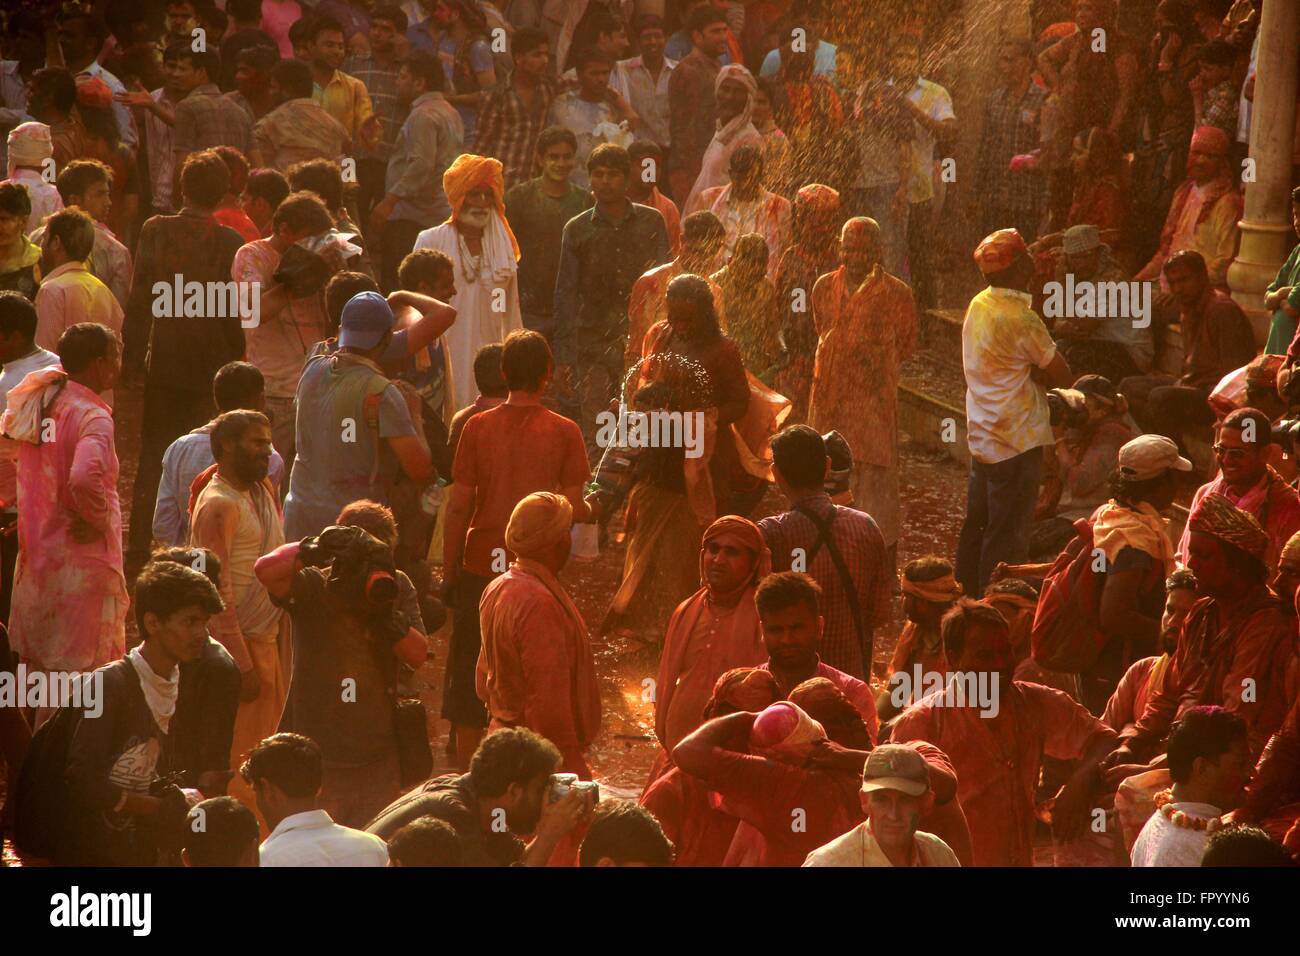 Migliaia di indù gioco devoto Lathmar holi in Nandgaon, Mathura, India. Lathmar è una celebrazione locale del festival indù di holi. Essa avviene in giorni prima della reale Holi nelle vicine città di Barsana e vicino Nandgaon Mathura nello stato di Uttar Pradesh, dove migliaia di indù e i turisti si radunano ogni anno. (Foto di Shashi Sharma / Pacific Stampa) Foto Stock